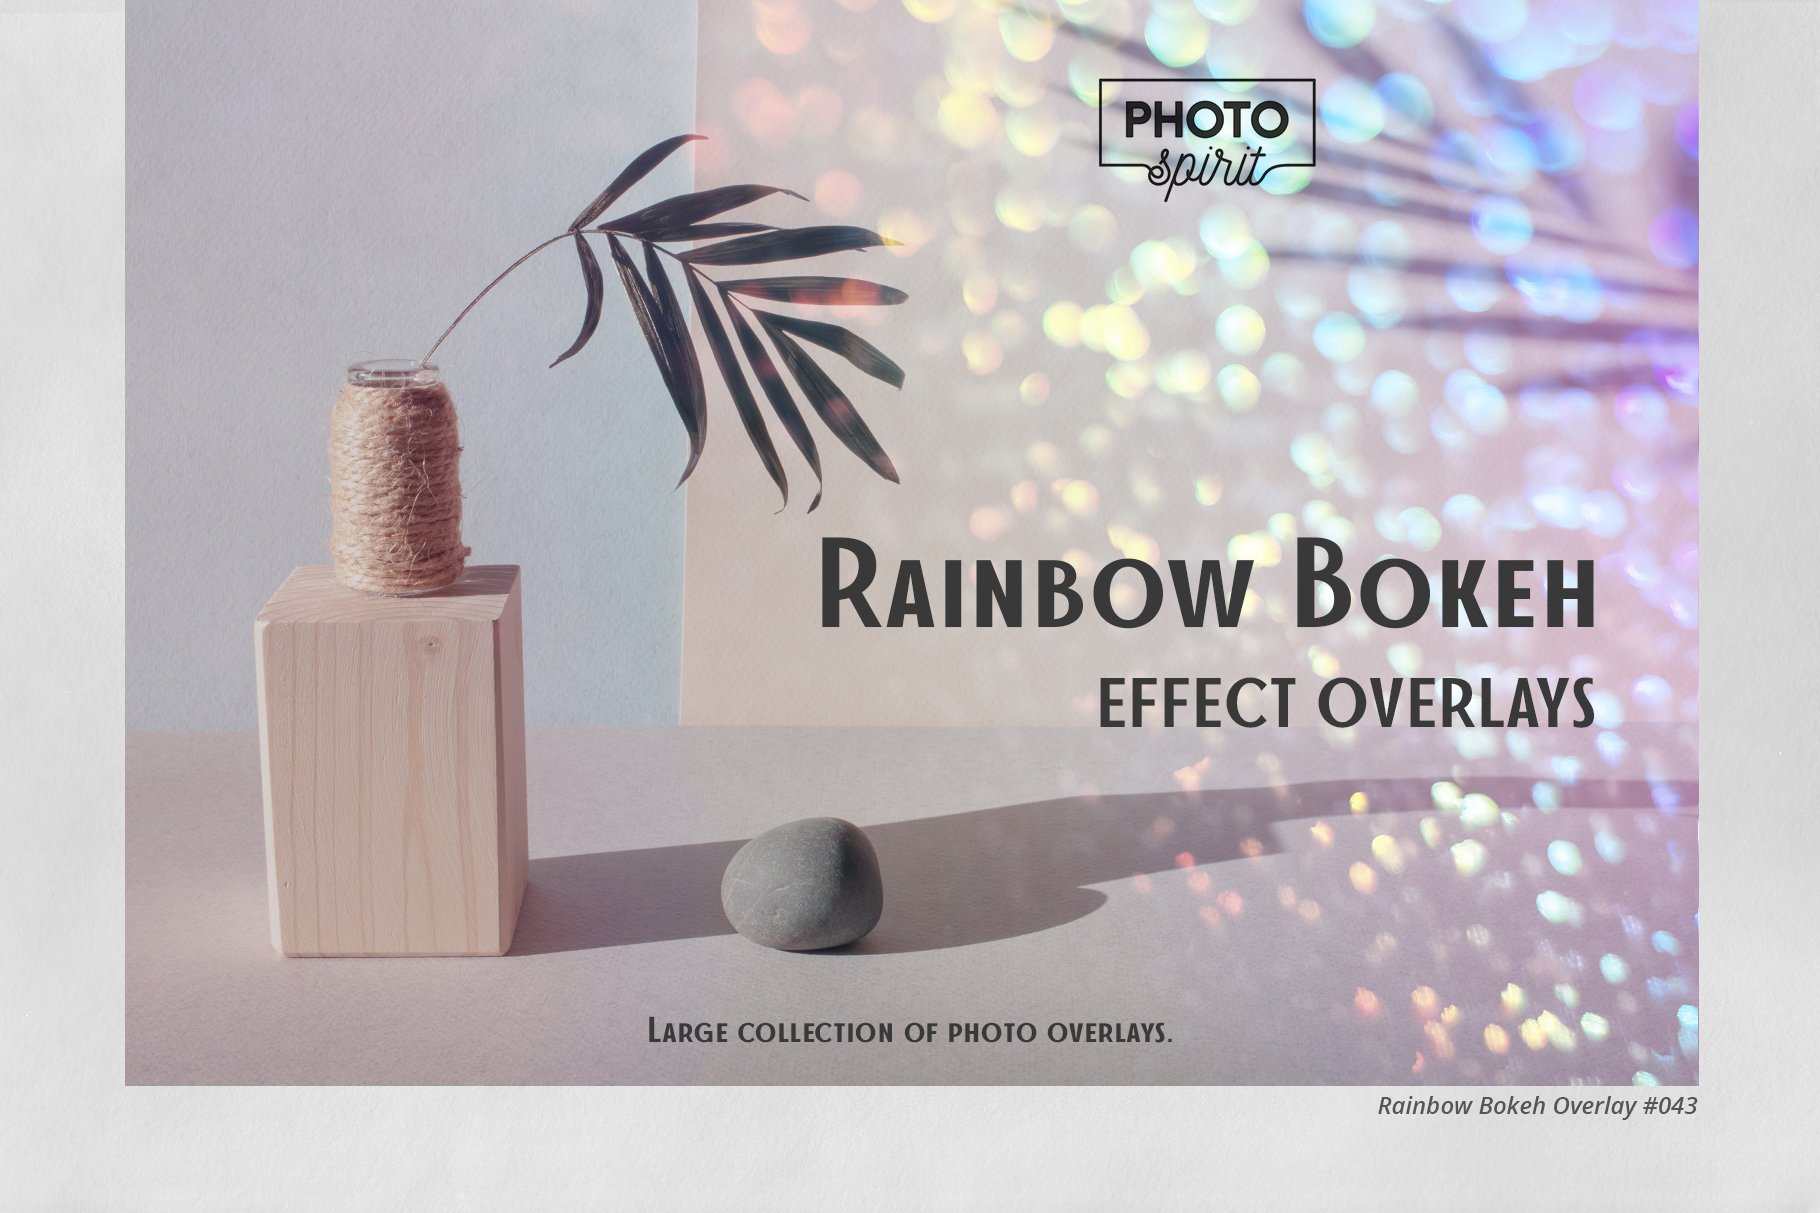 Rainbow Bokeh Effect Overlayscover image.